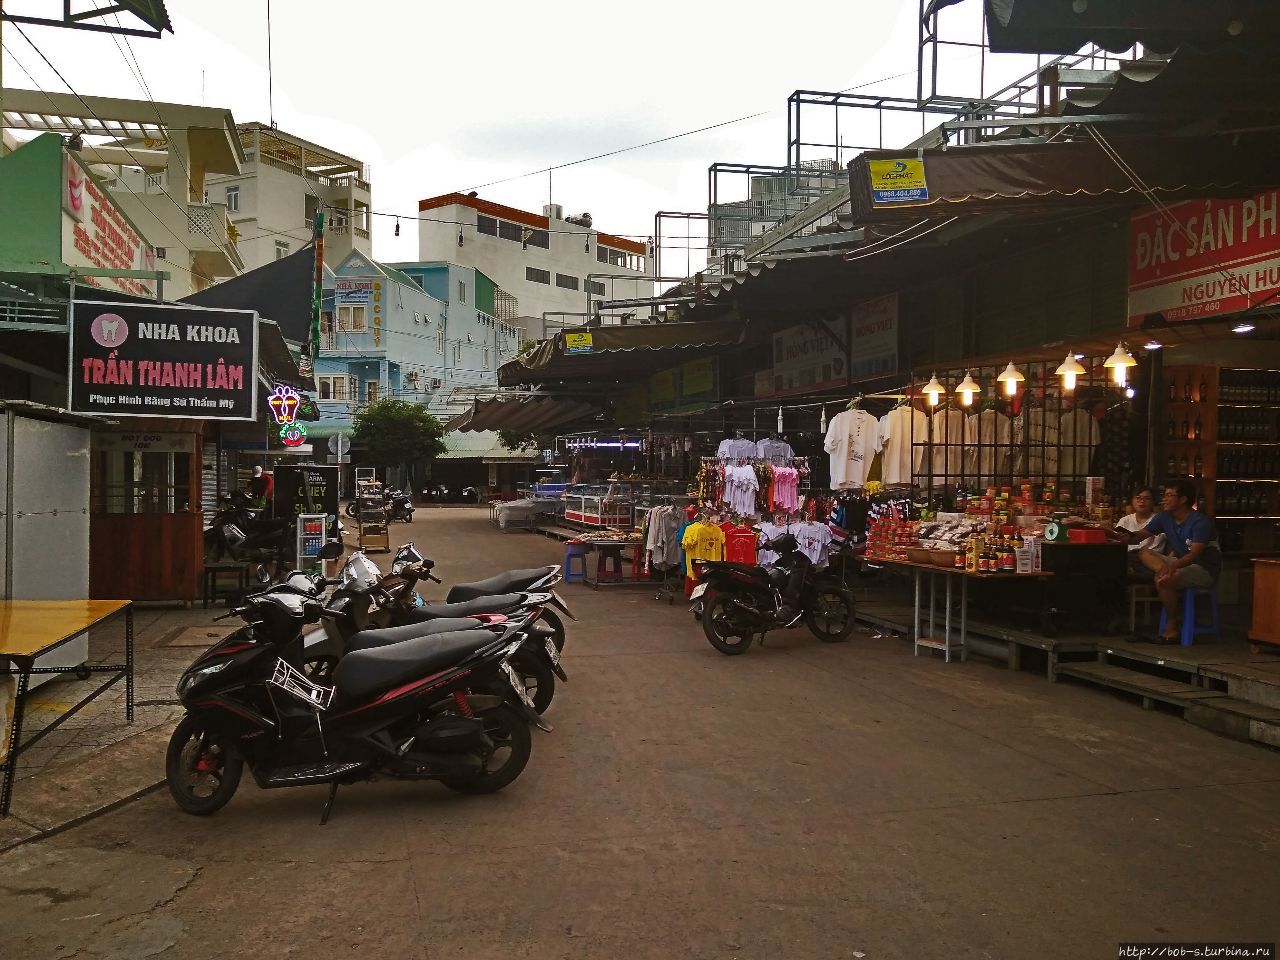 Ночной Рынок. Дуонг-Донг, Вьетнам